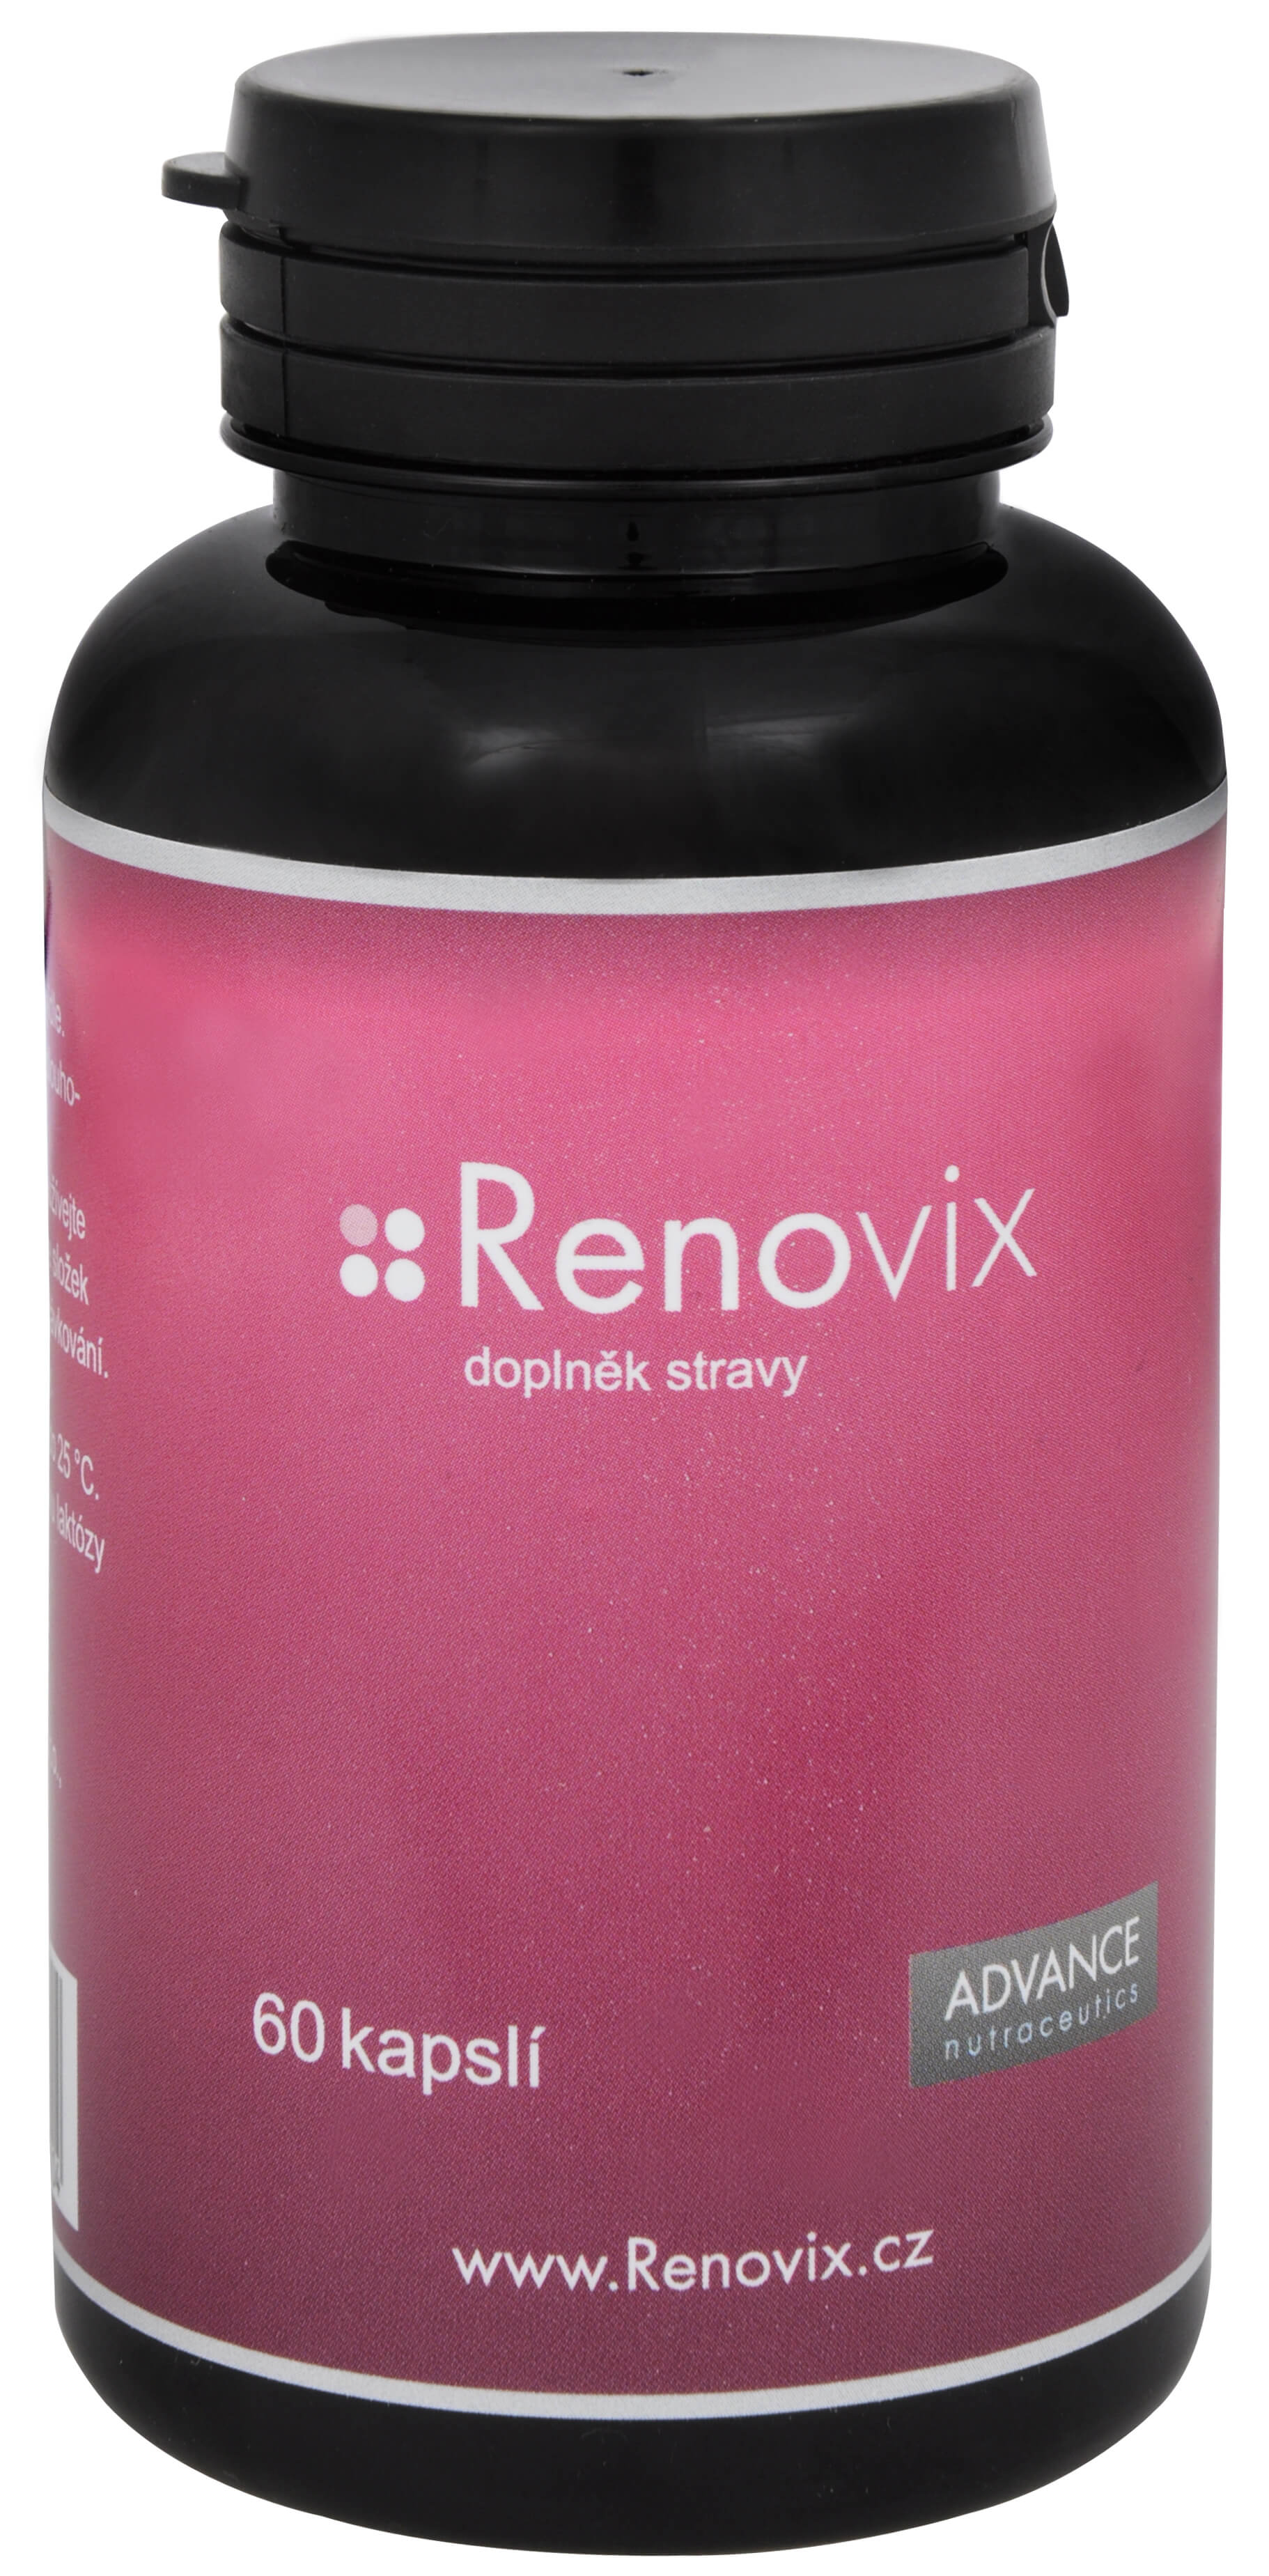 Zobrazit detail výrobku Advance nutraceutics Renovix 60 kapslí